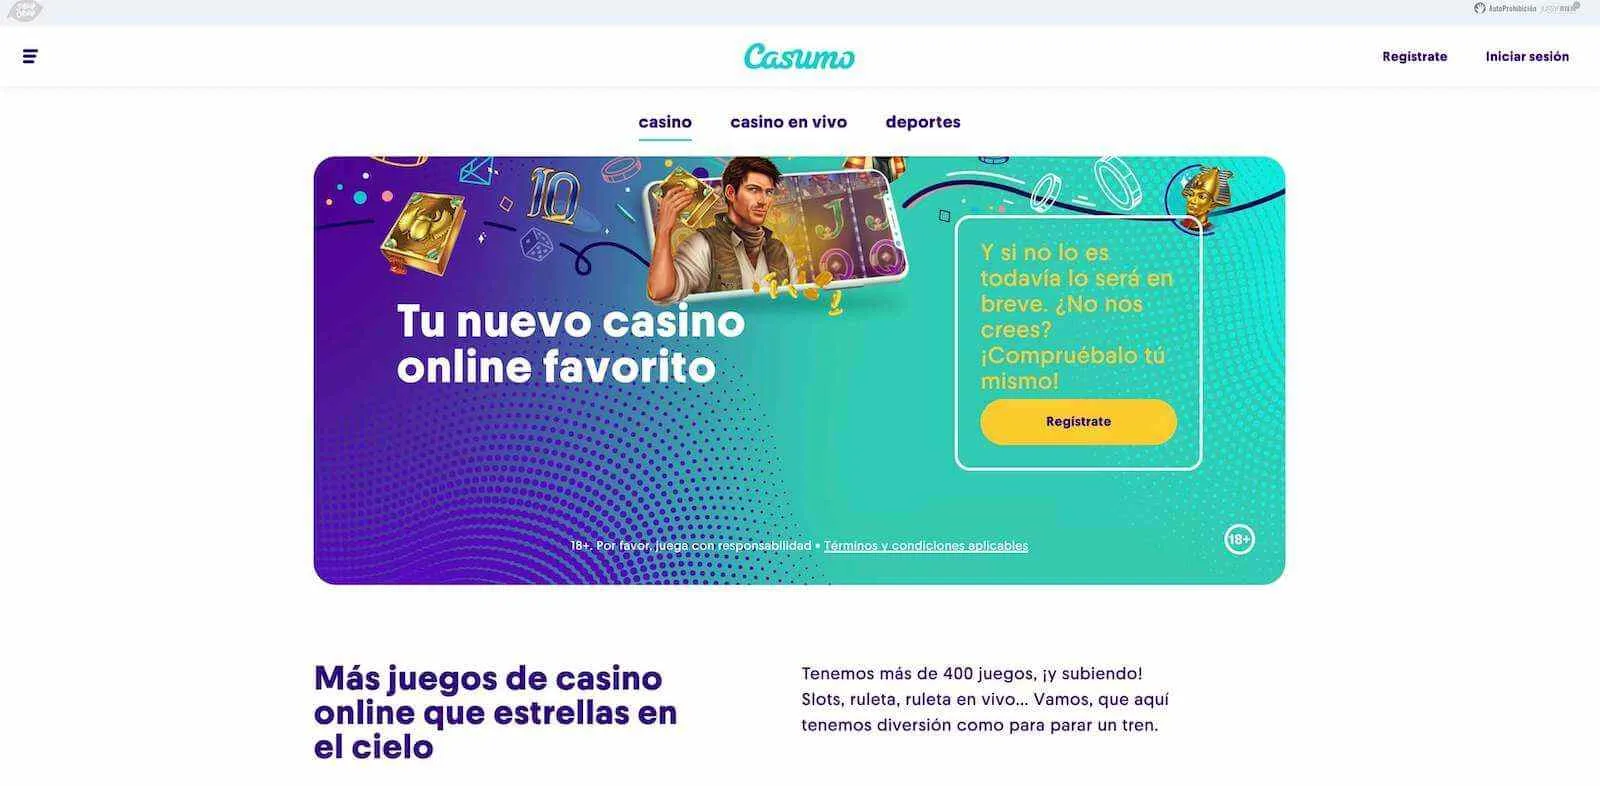 Casumo Casino Online Espana